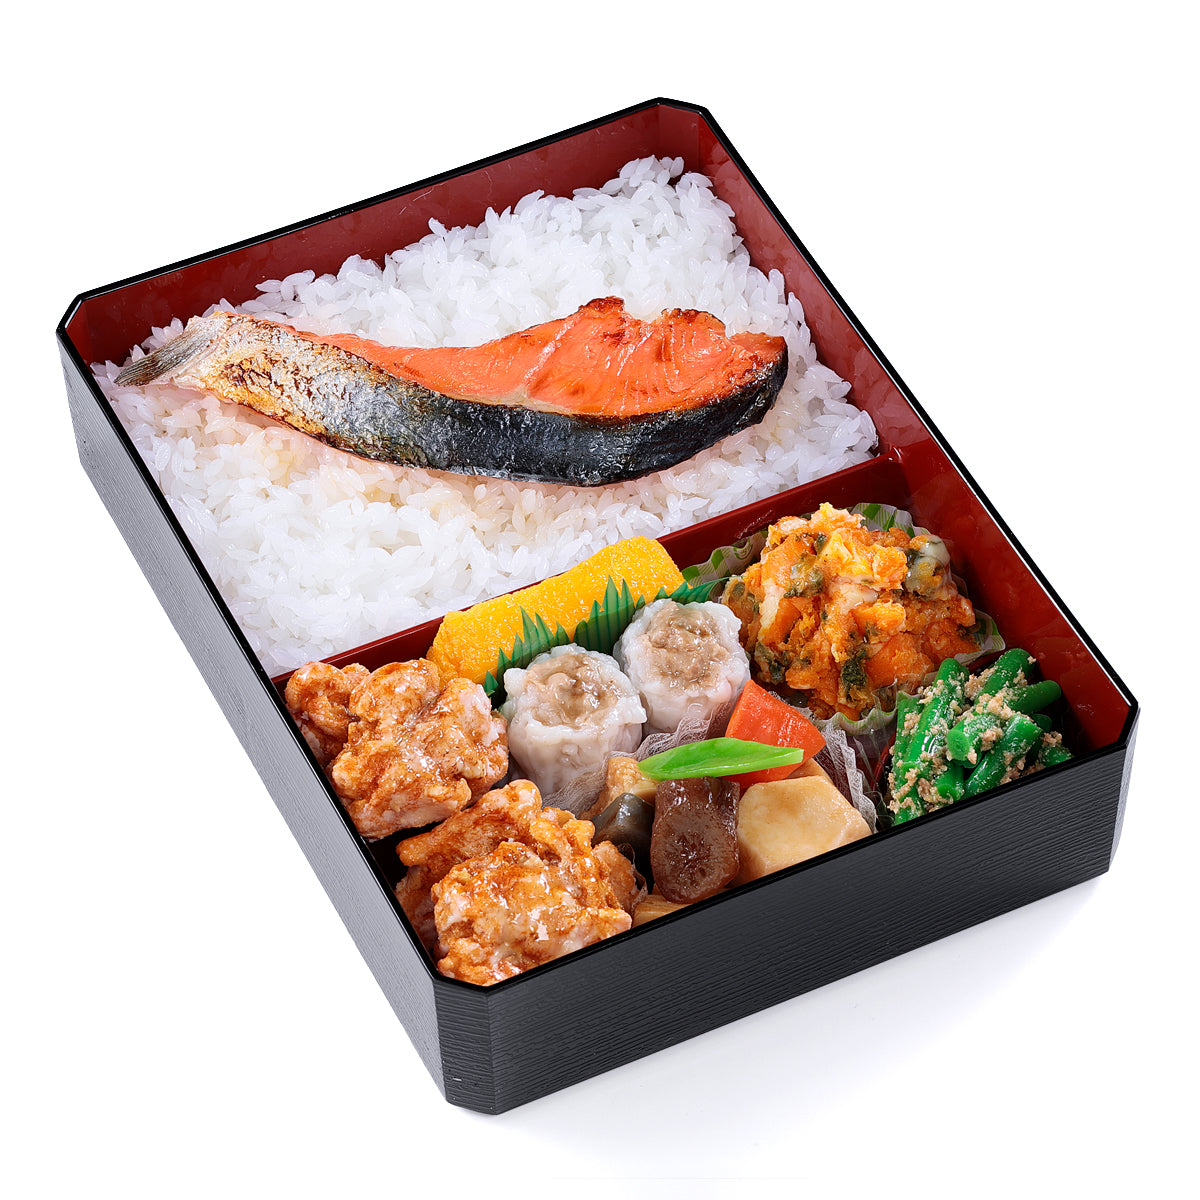 オリジナル食品サンプル「鮭弁当」の商品画像です。